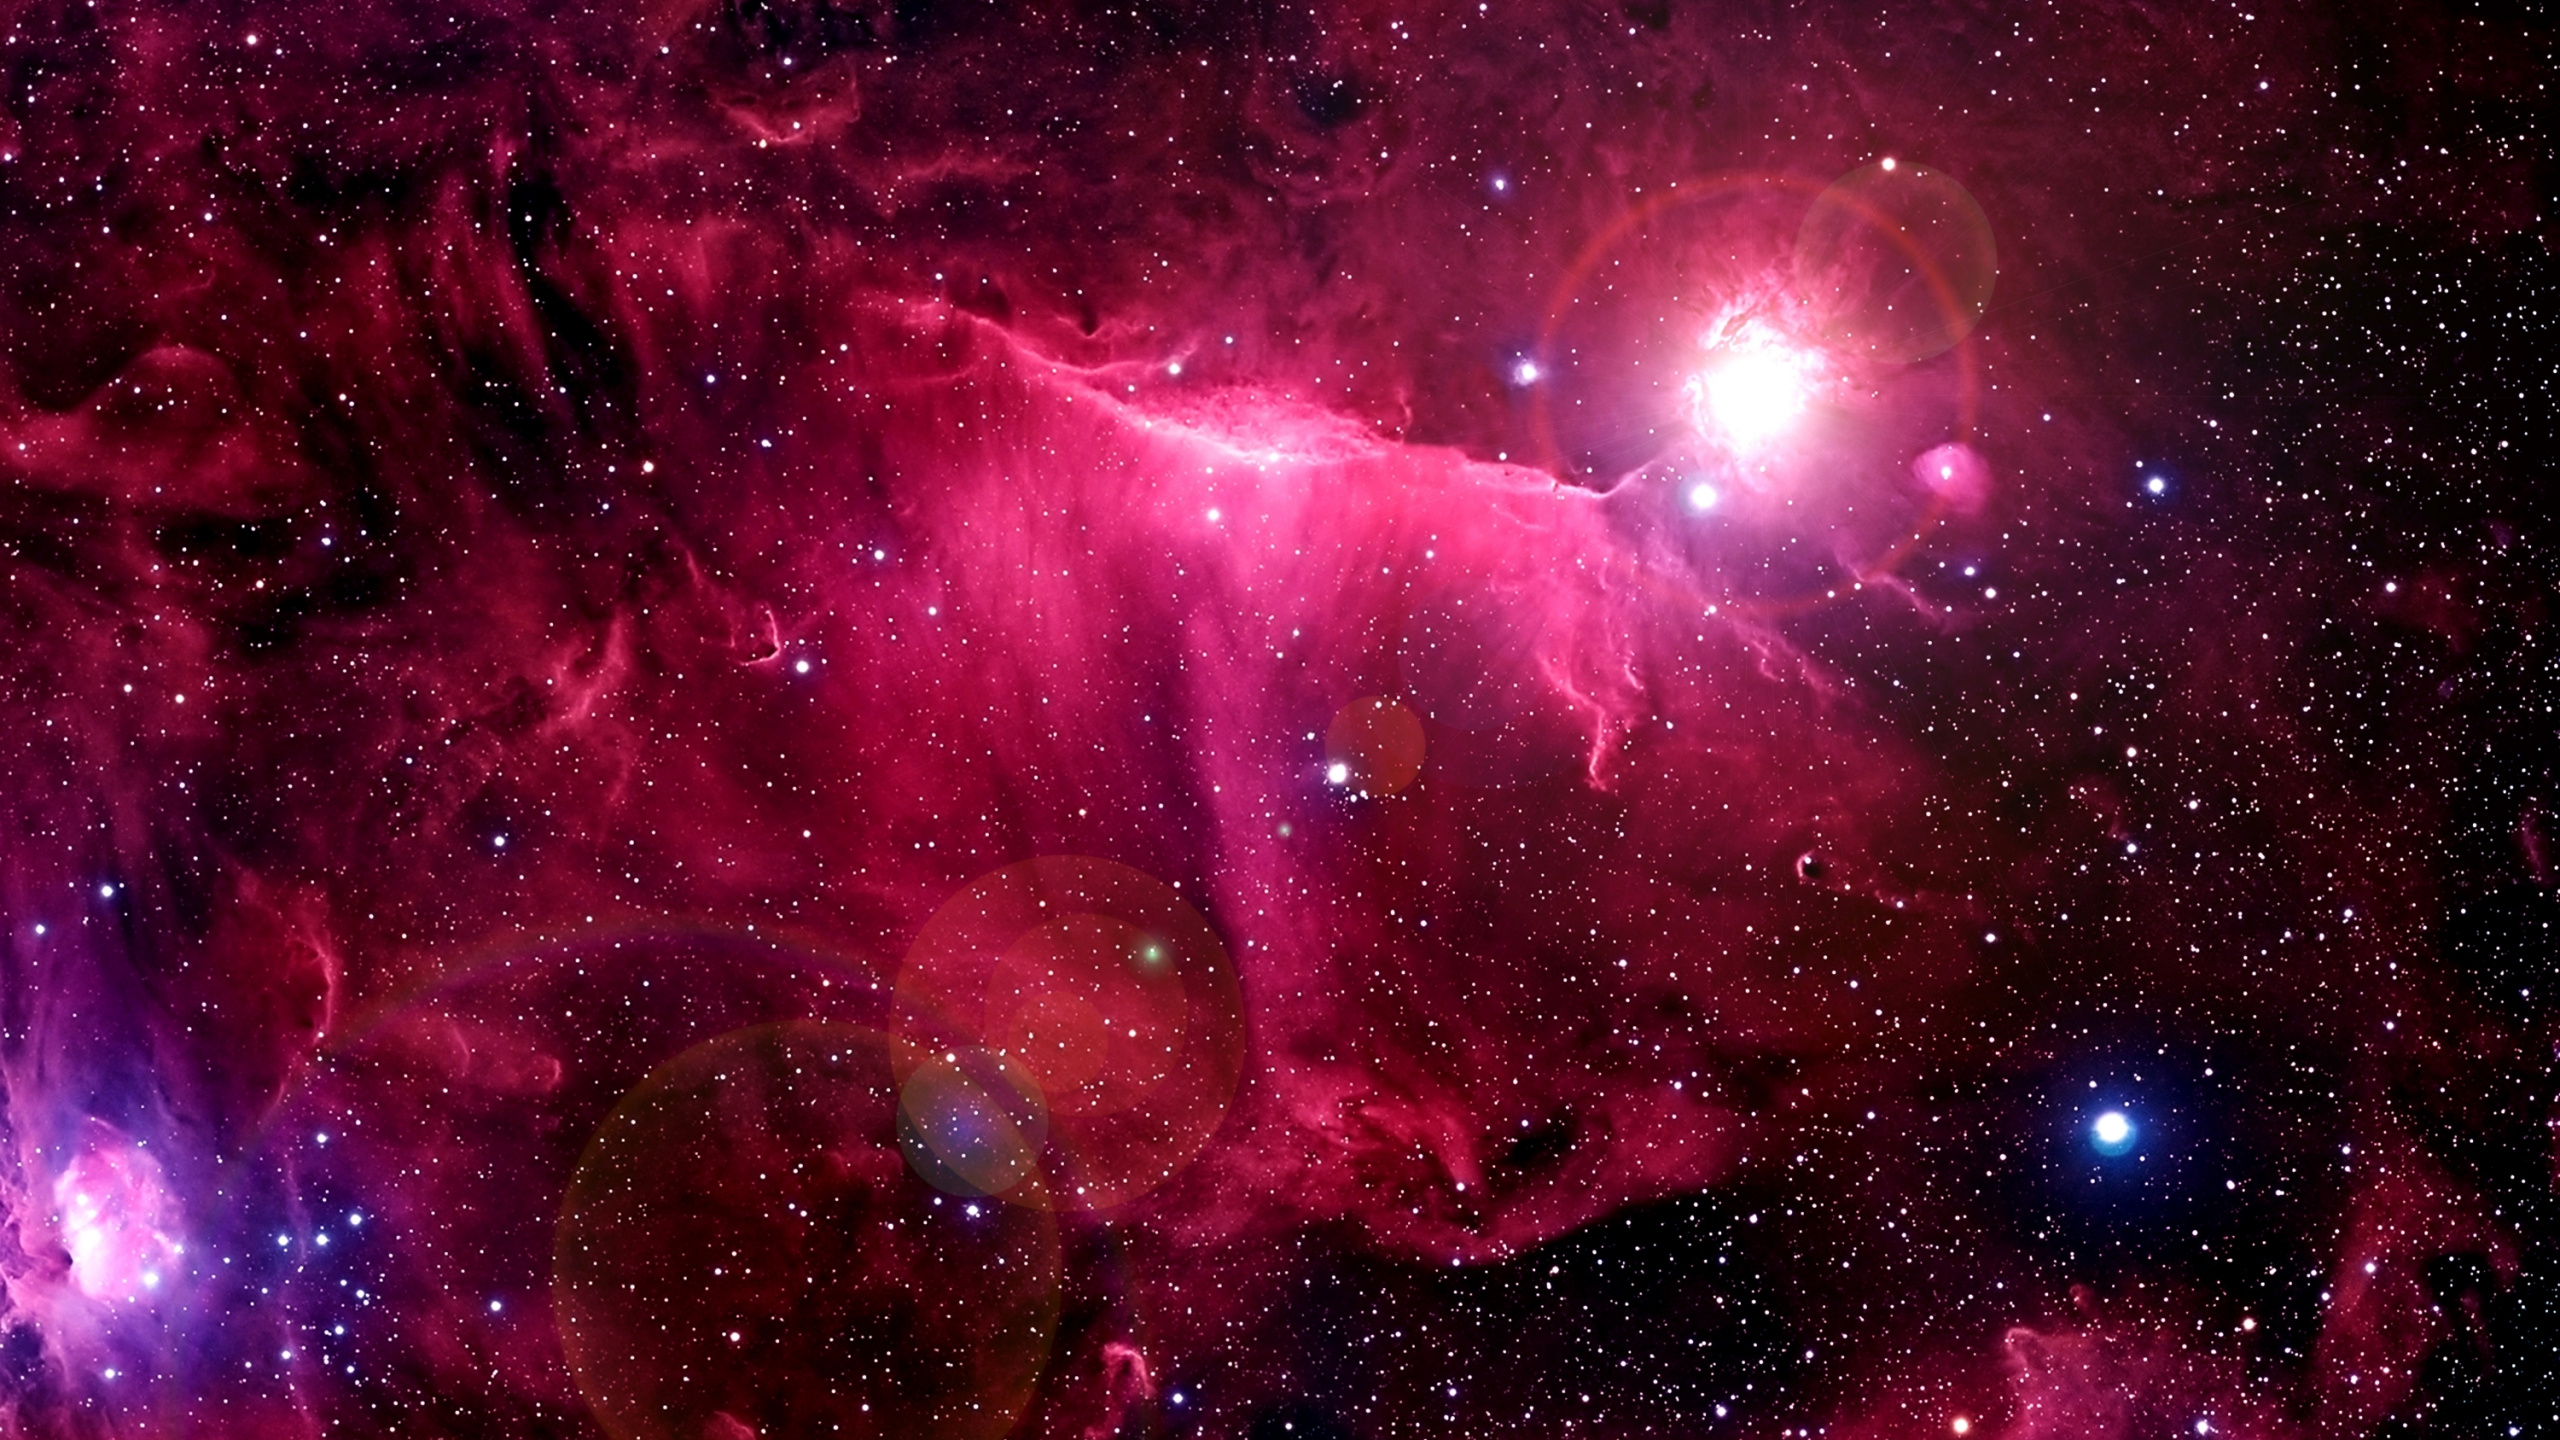 外层空间, 天文学对象, 粉红色, 紫色的, 宇宙 壁纸 2560x1440 允许